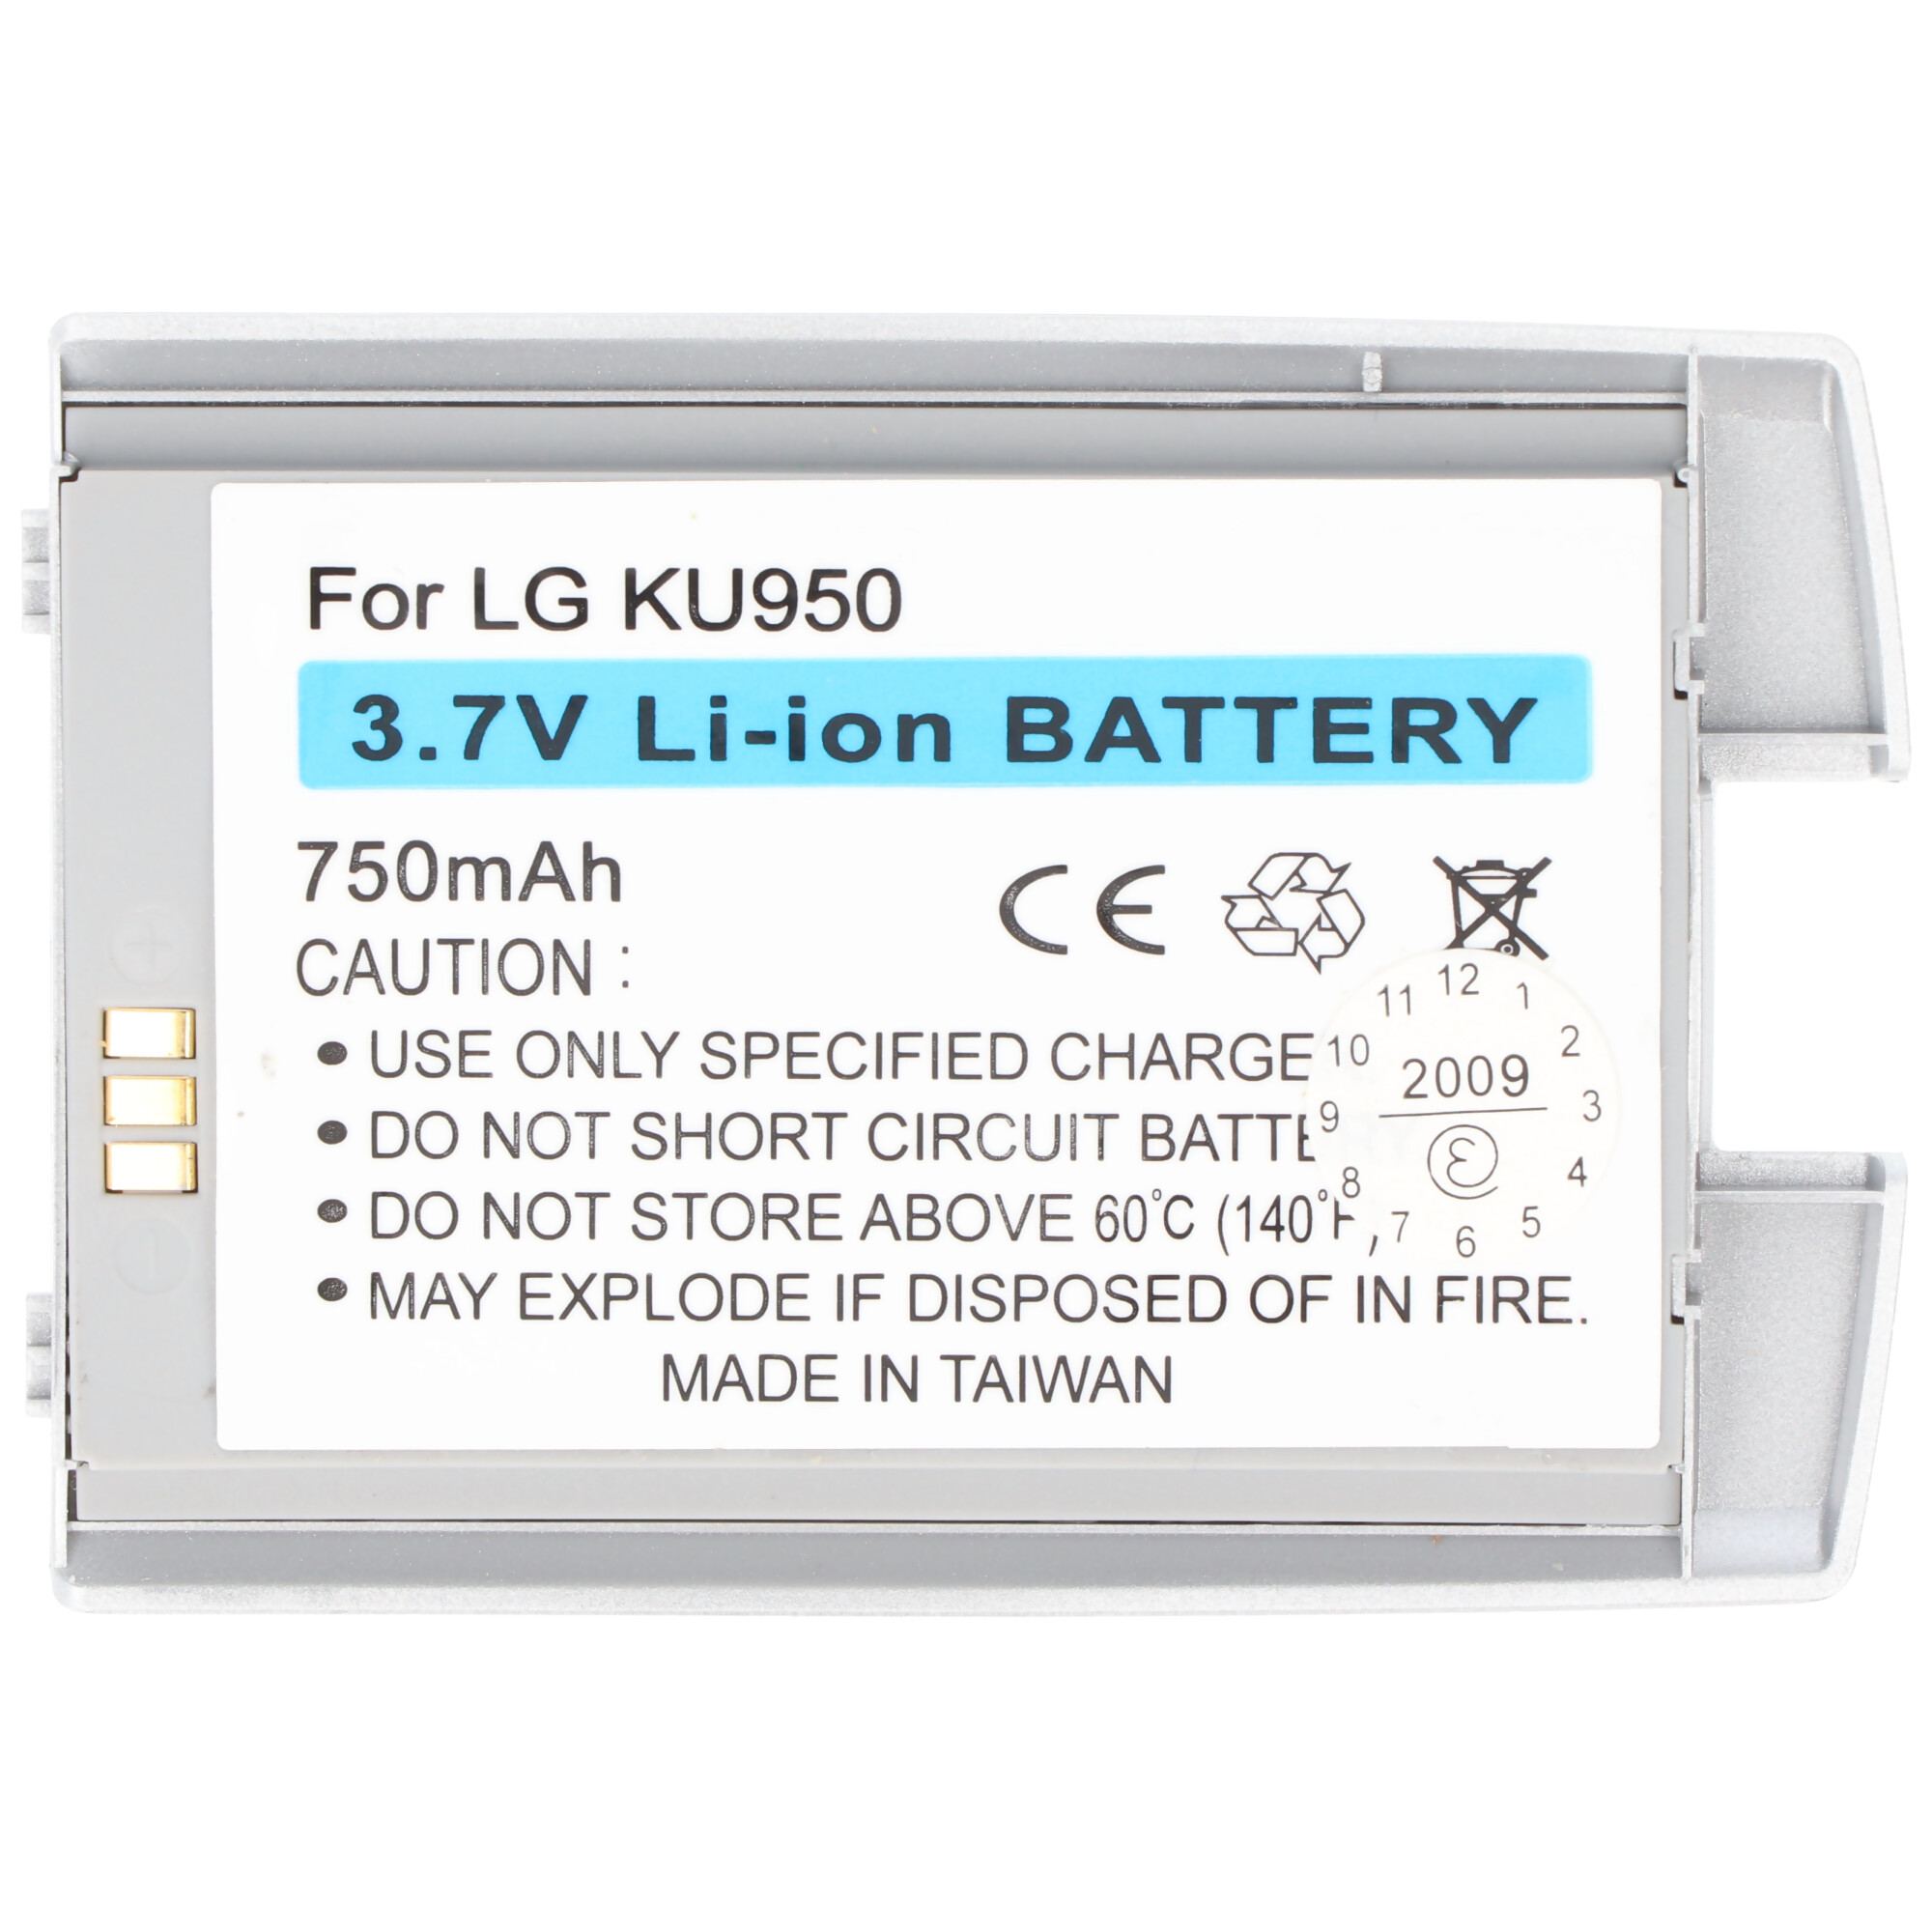 Lithium-Ionen passend Li-Ion 750 Handy-Akku, KU950, für mAh 750mAh LG - Akku ACCUCELL